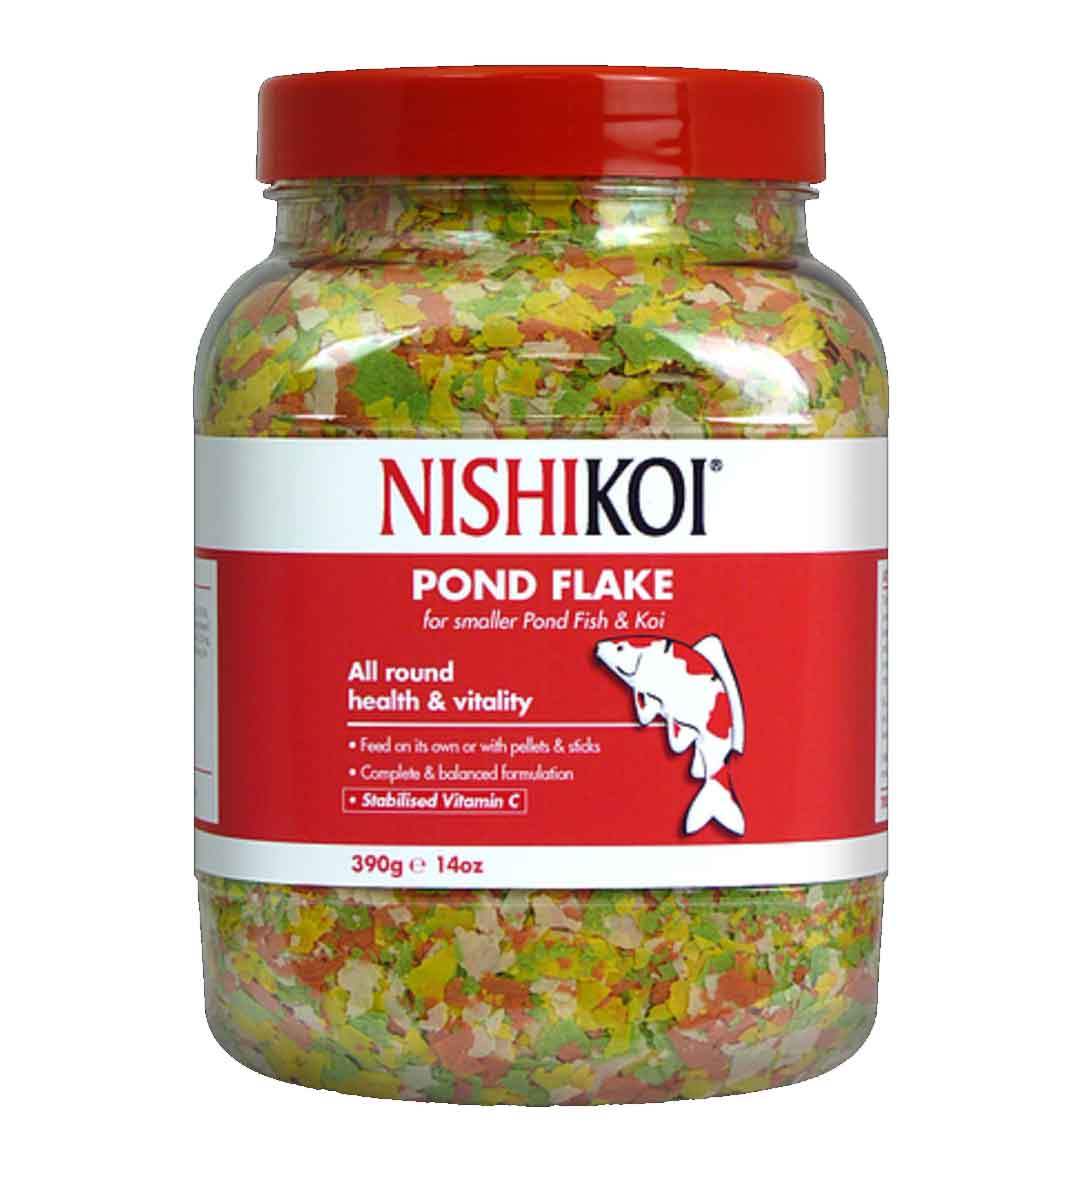 Nishikoi Pond Flake Fish Food 390g